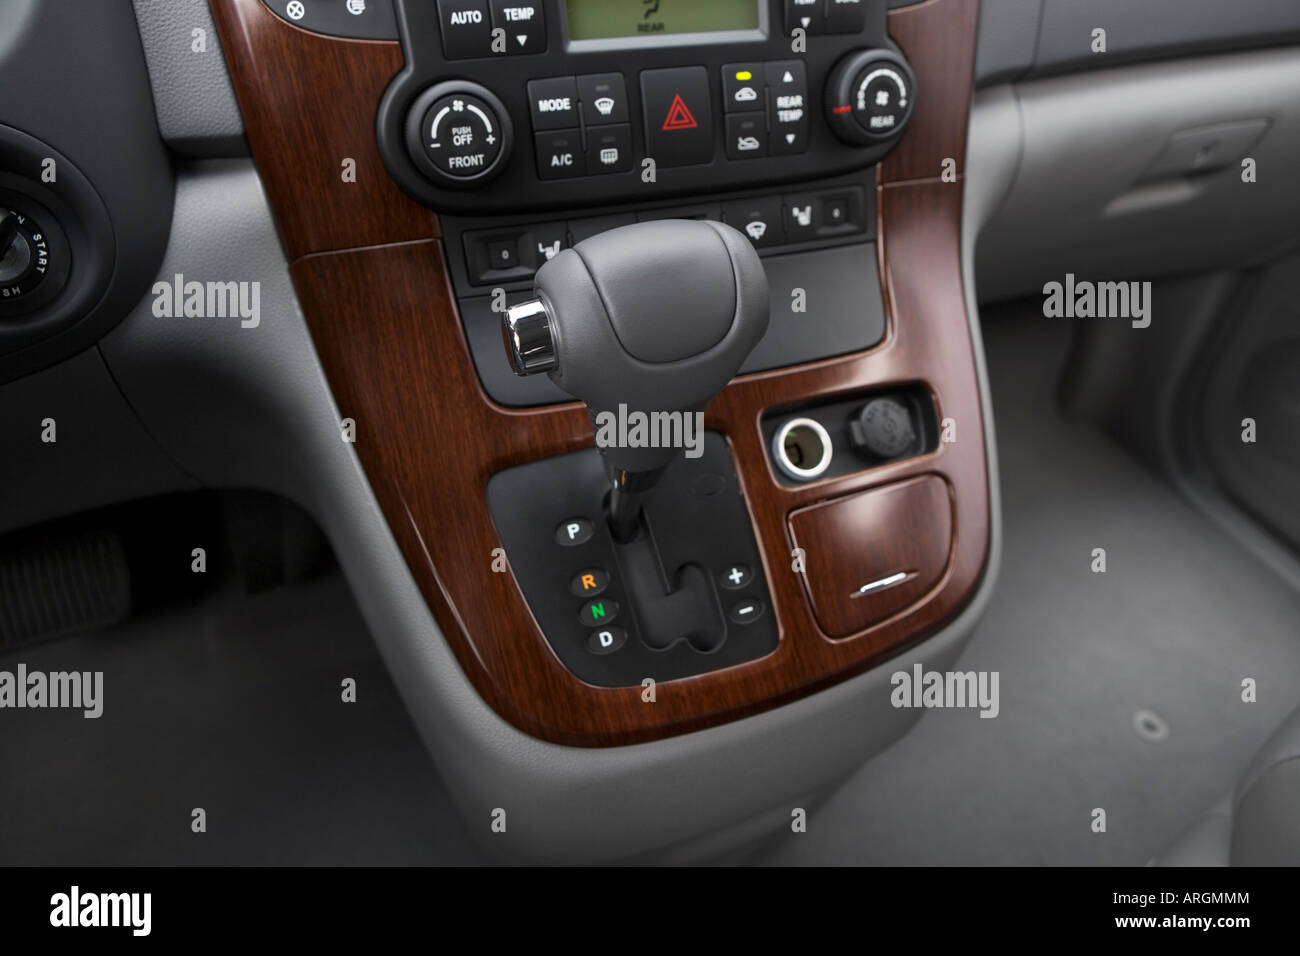 2007 Kia Sedona EX in Silver - Gear shifter/center console Stock Photo -  Alamy